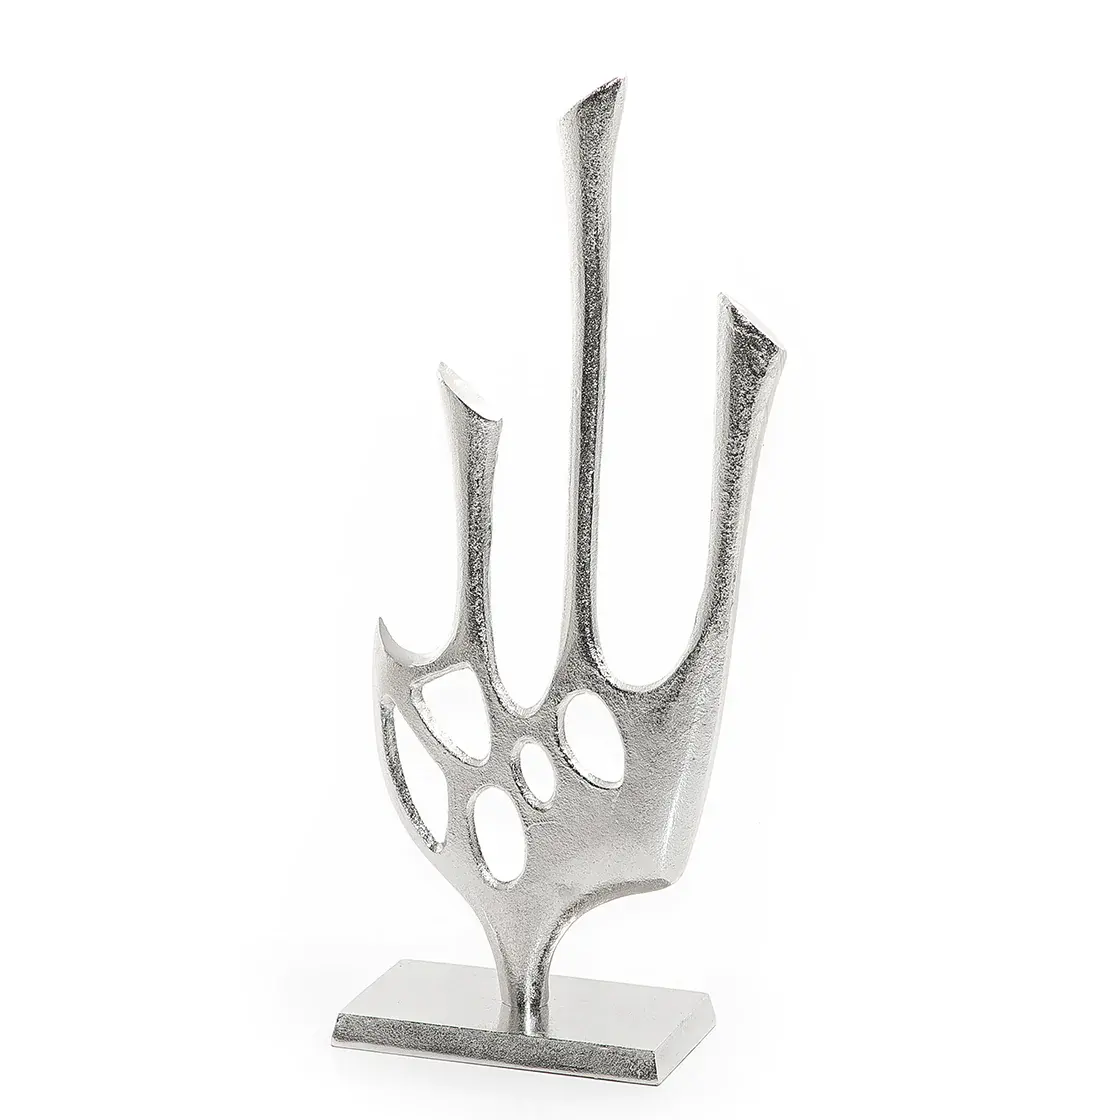 Fantezi tasarım masa dekorasyon alüminyum heykel üreticisi özel ev dekorasyon Metal gümüş heykel toptan fiyat